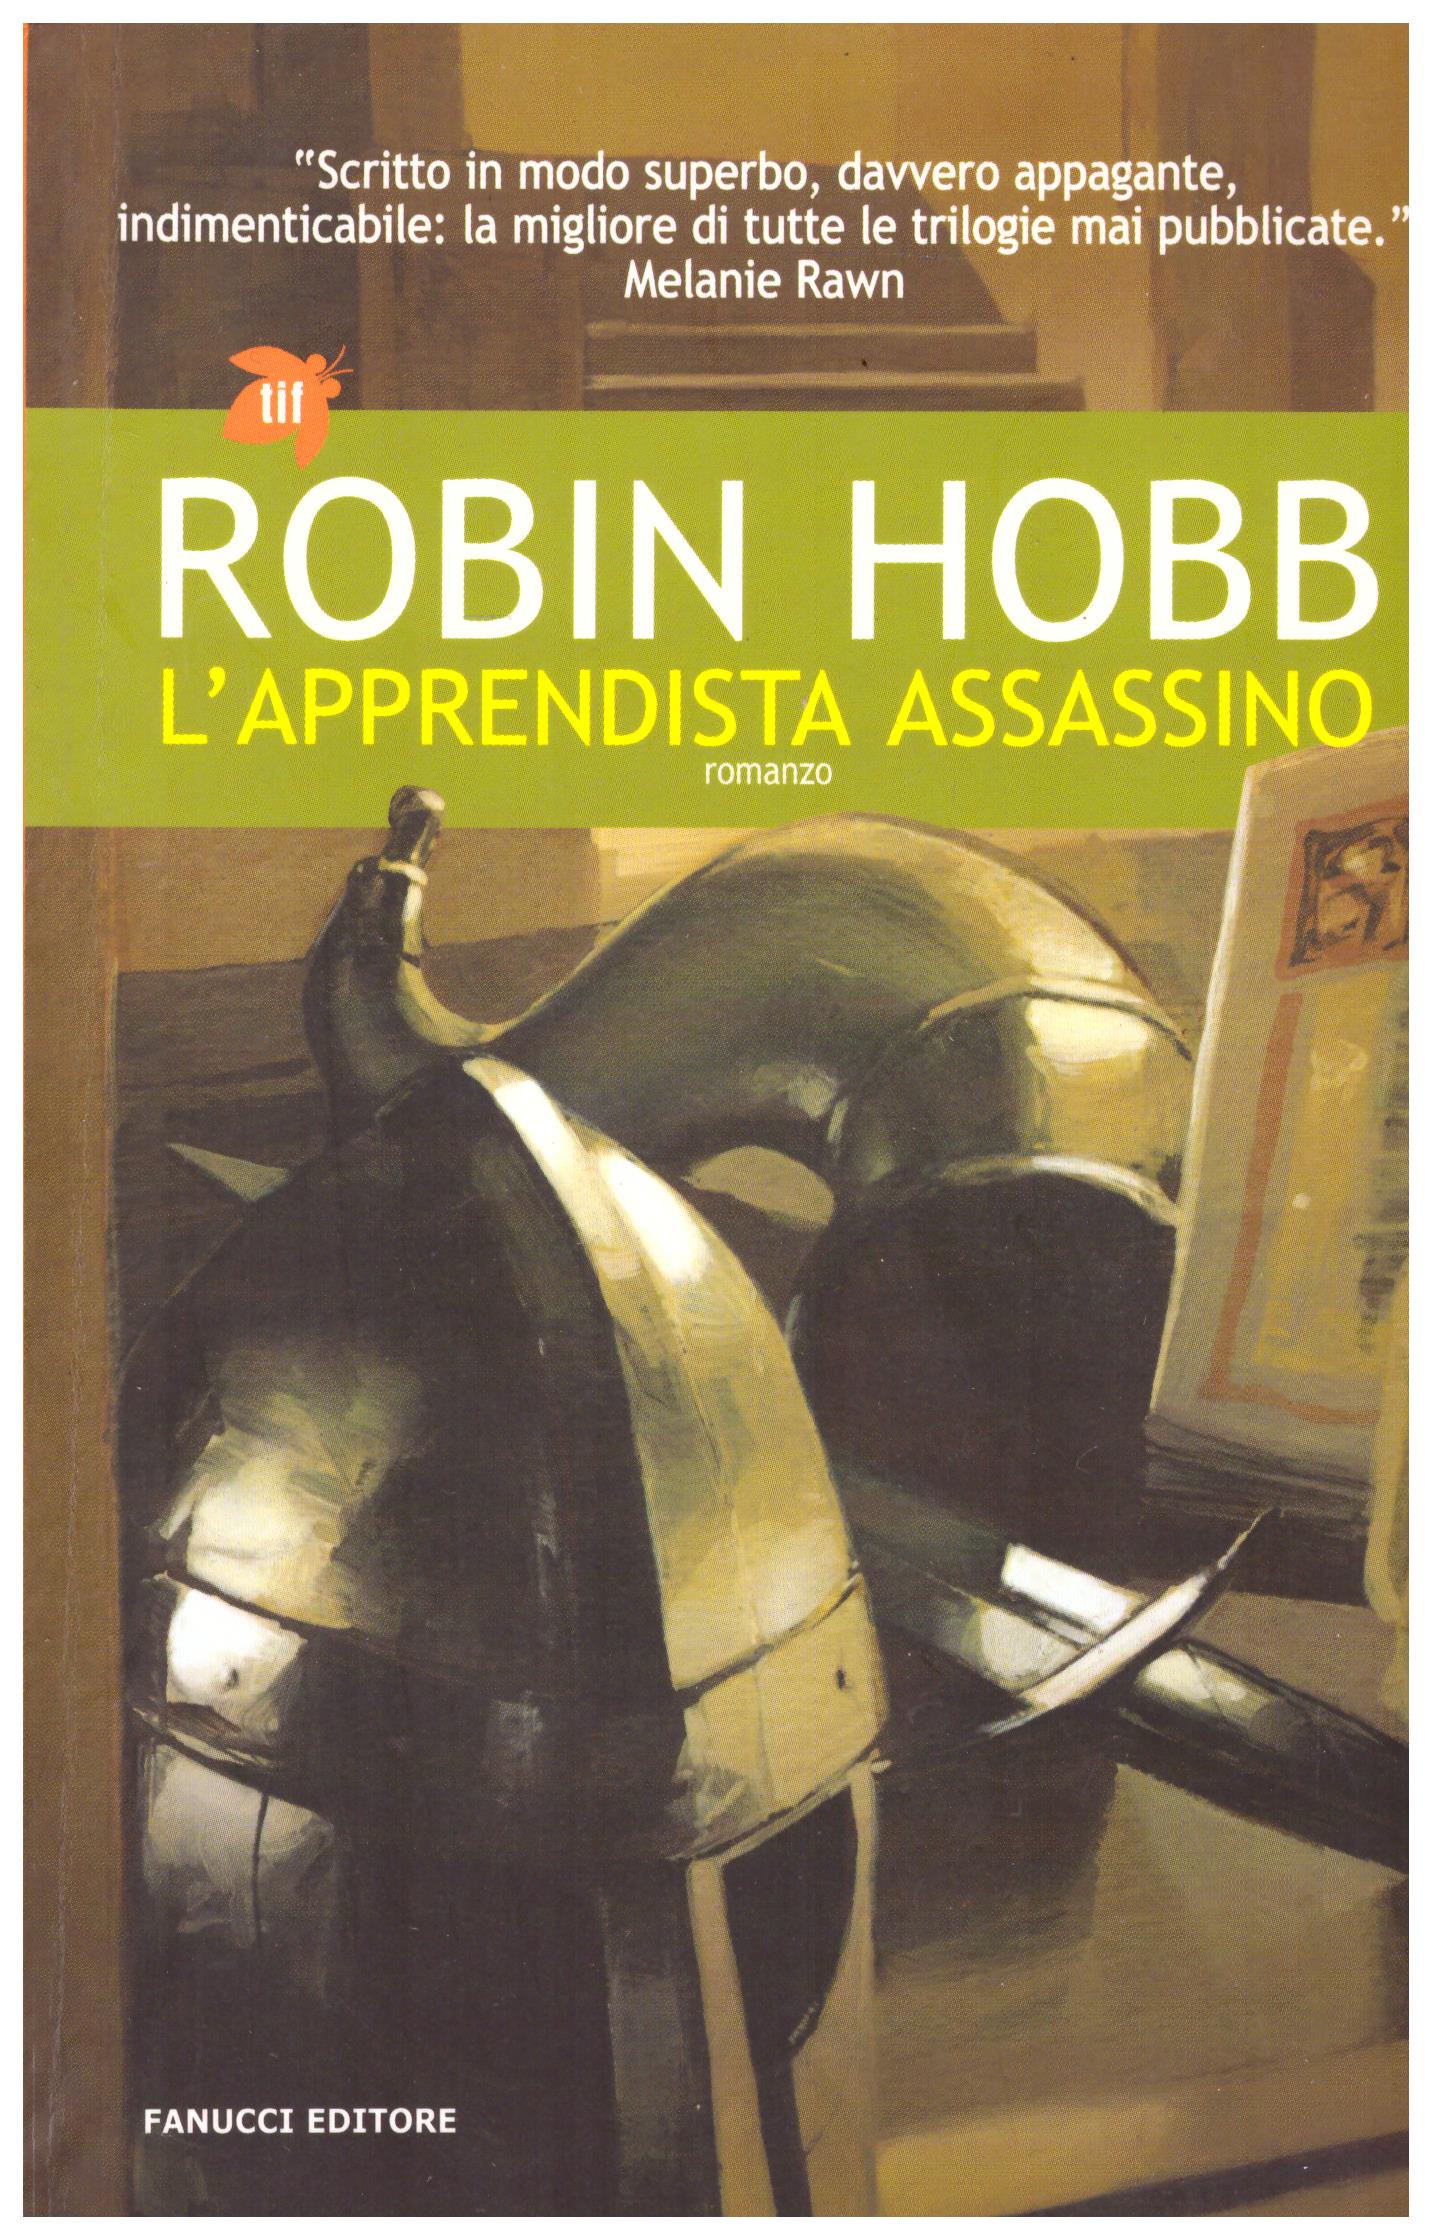 Titolo: L'apprendista assassino  Autore: Robin Hobb  Editore: Fanucci, 2005